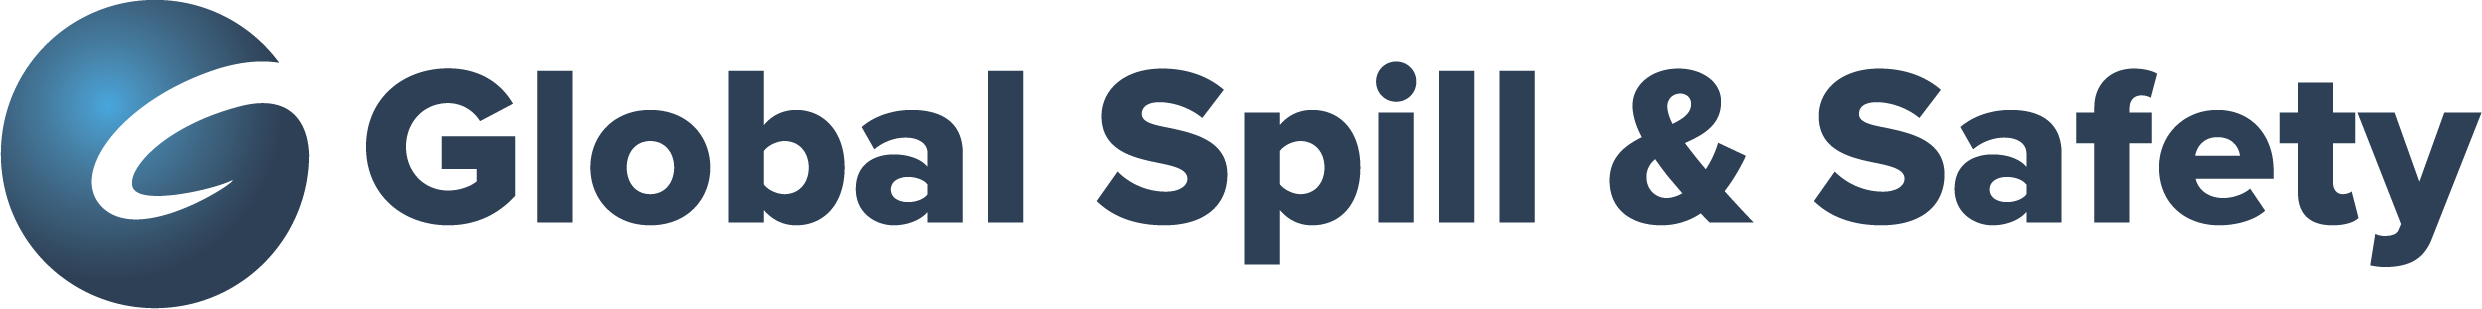 Global Spill & Safety logo